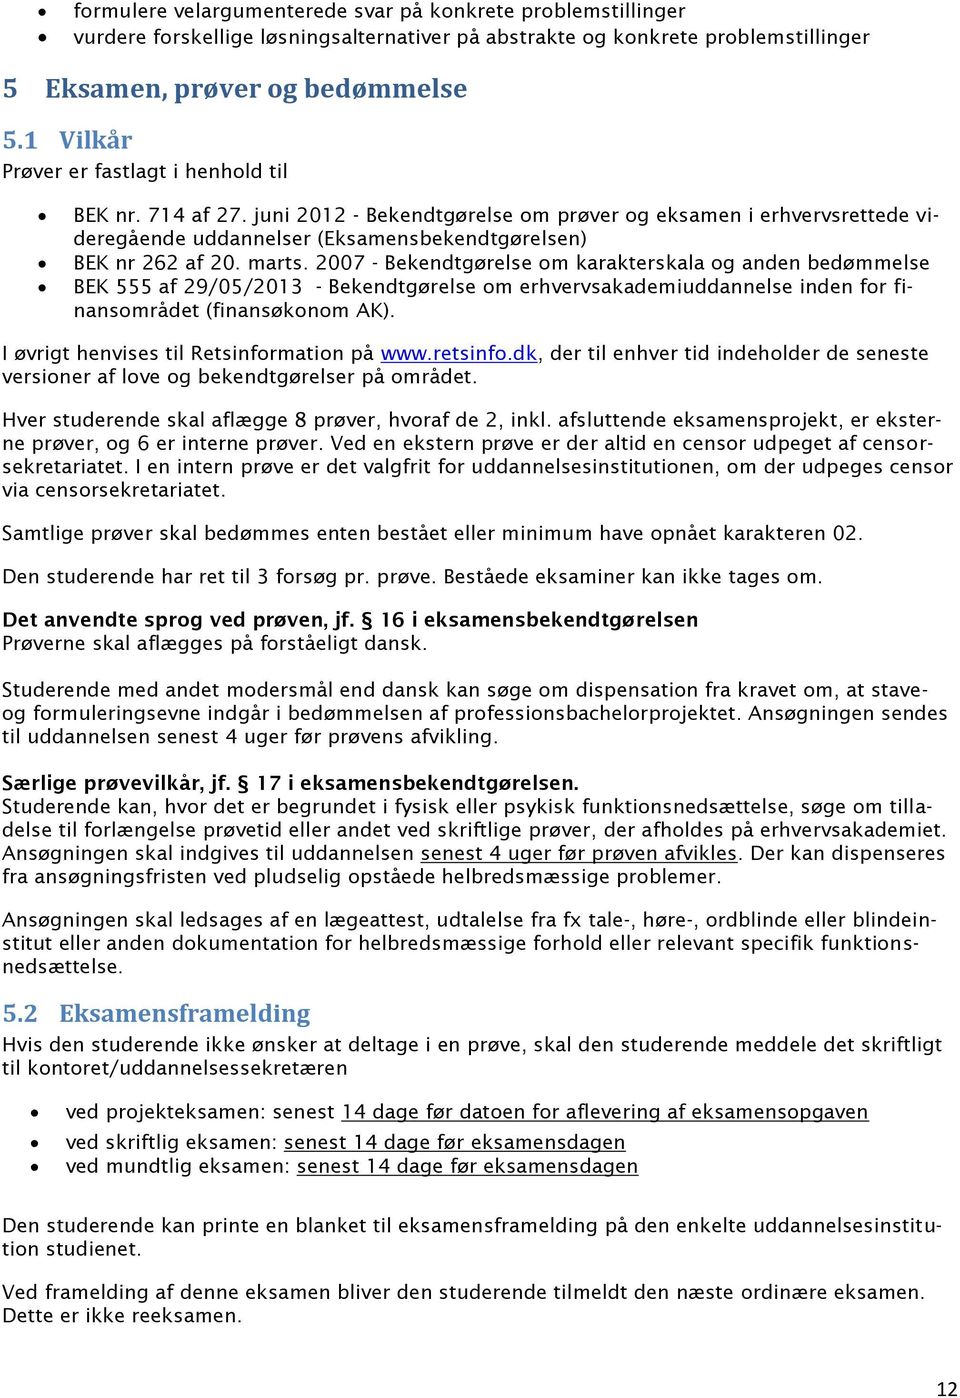 marts. 2007 - Bekendtgørelse om karakterskala og anden bedømmelse BEK 555 af 29/05/2013 - Bekendtgørelse om erhvervsakademiuddannelse inden for finansområdet (finansøkonom AK).